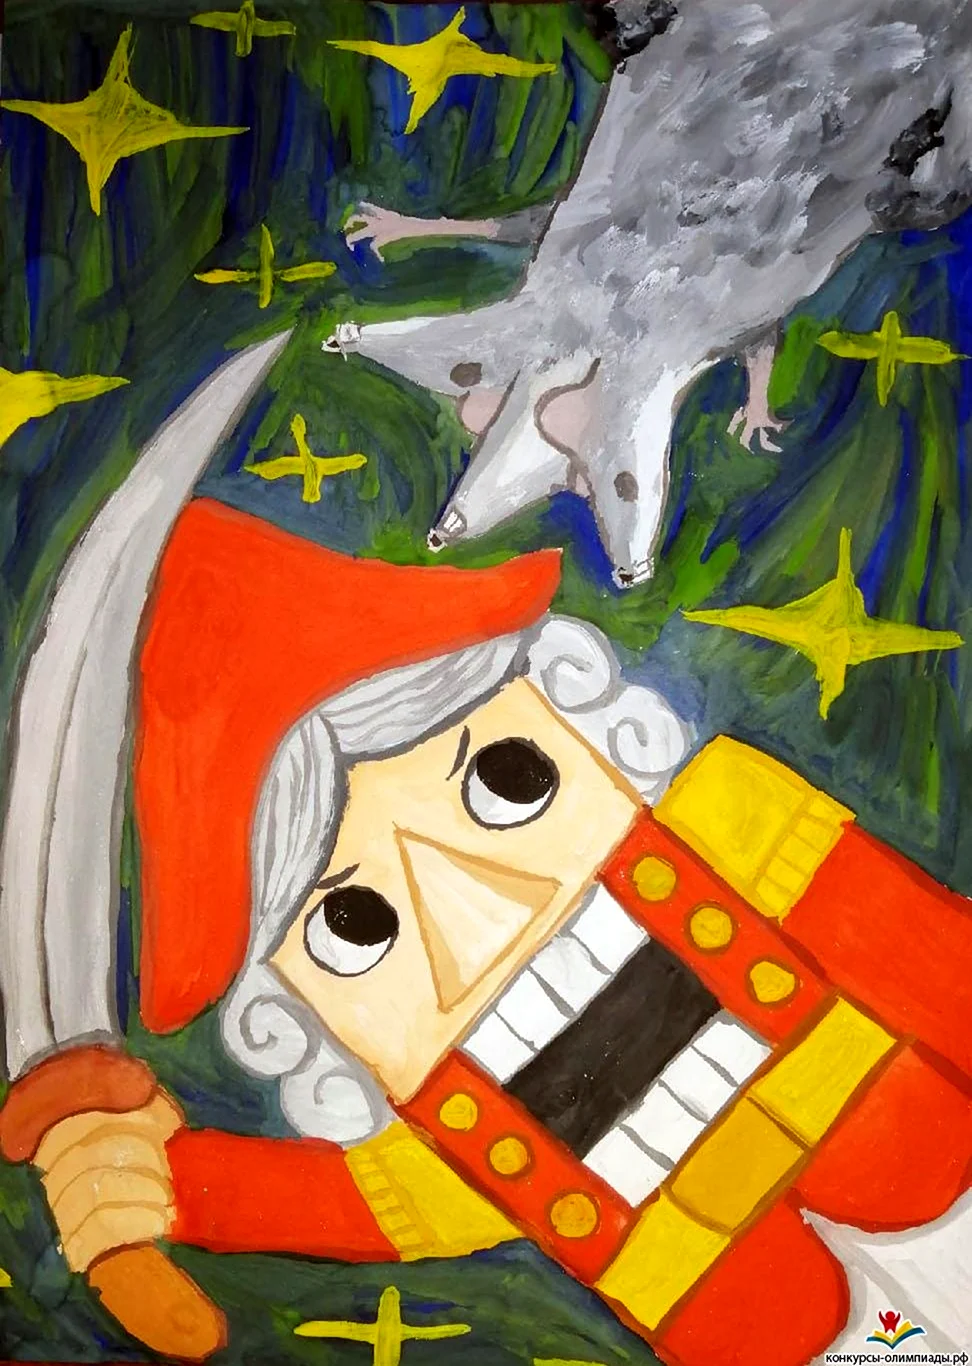 Щелкунчик и мышиный Король мультфильм 1999